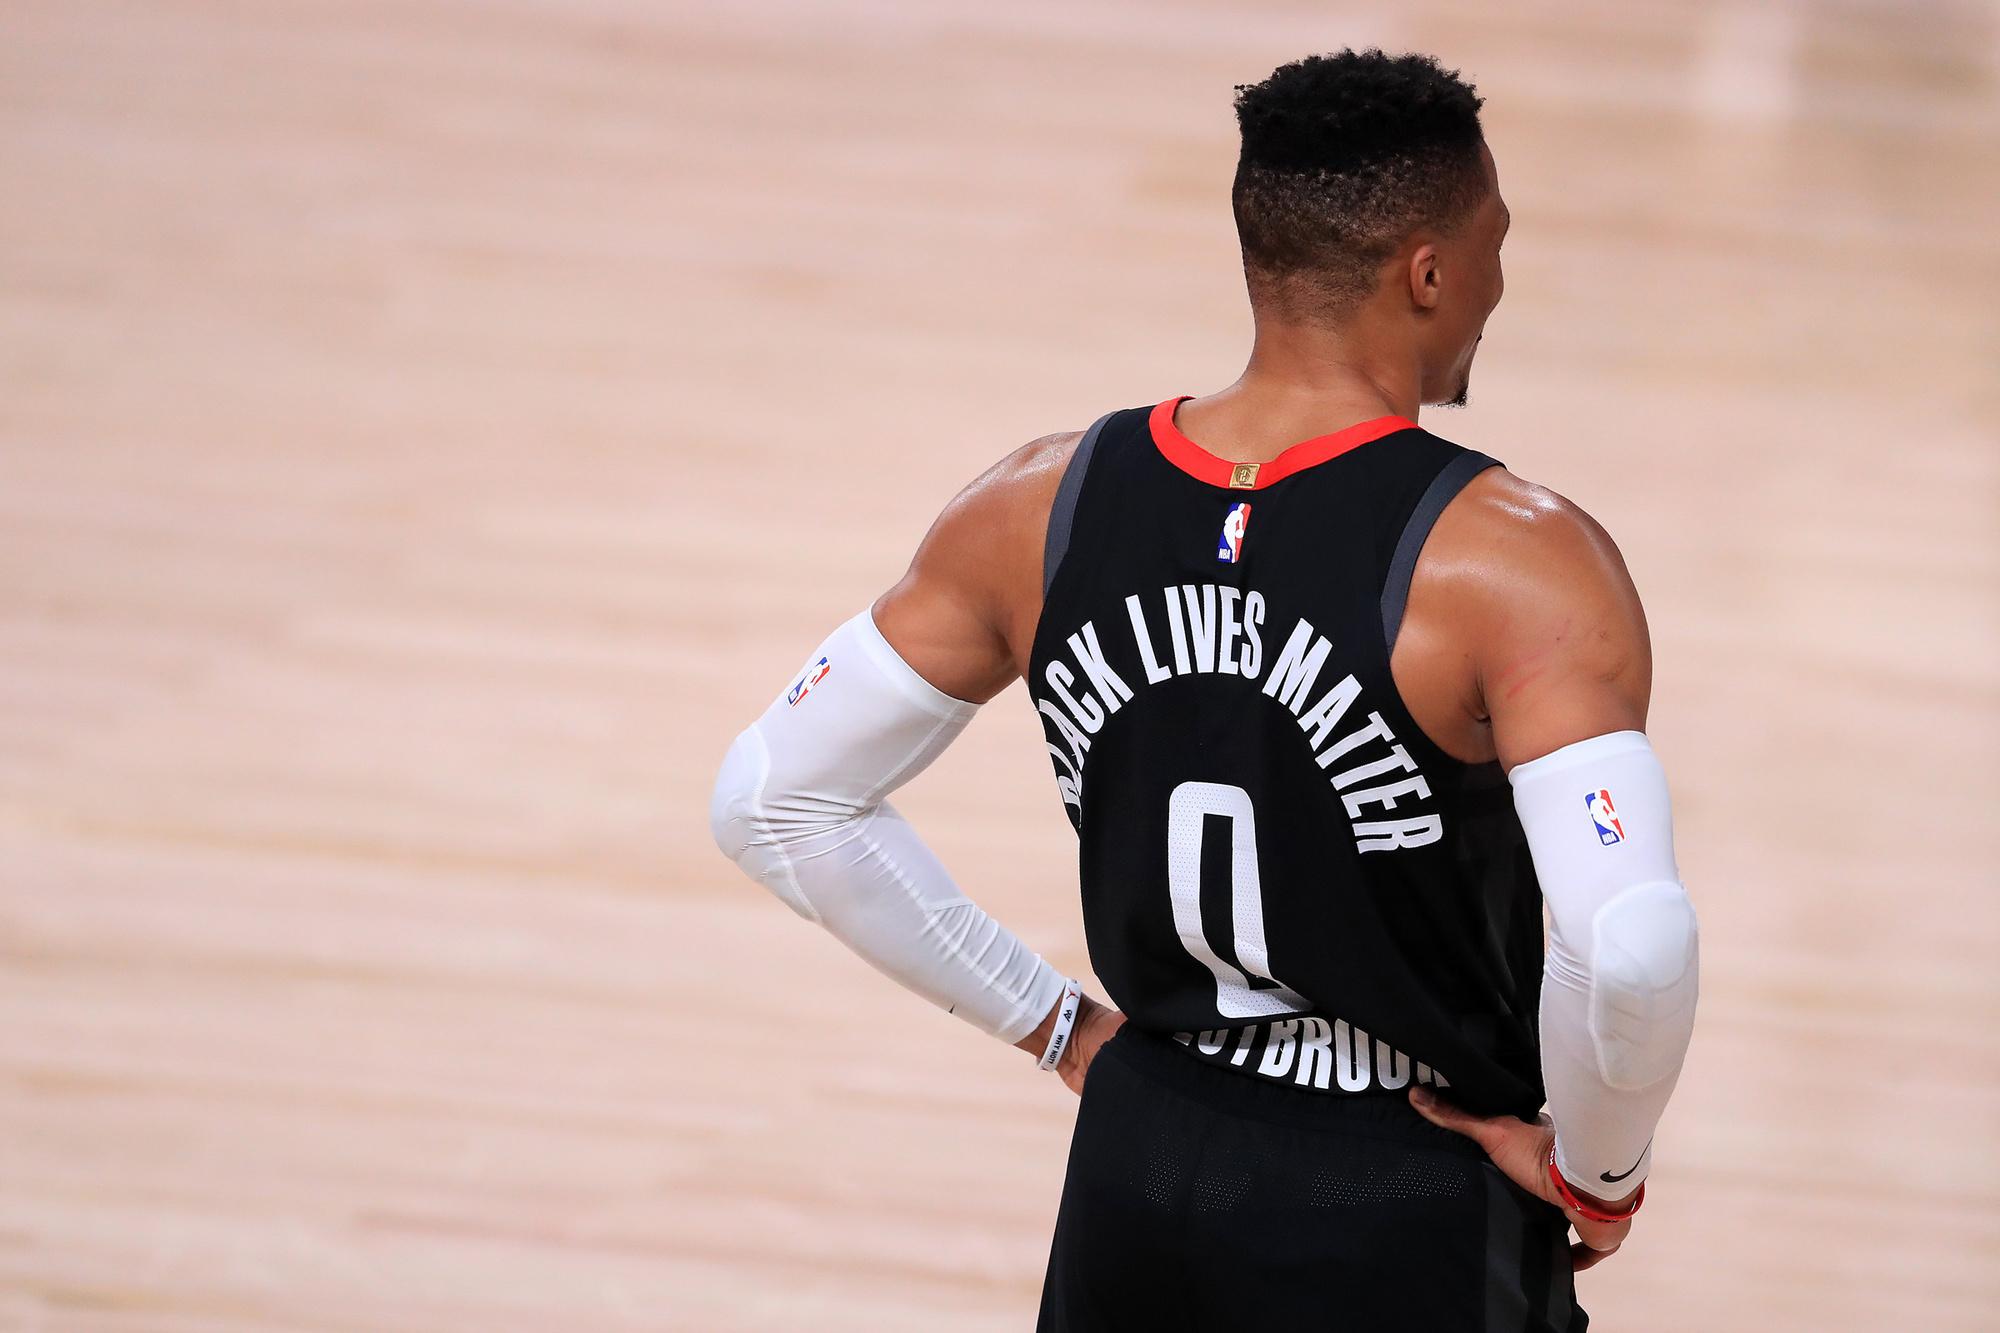 Slechts twintig procent van de spelers koos ervoor om geen boodschap op hun shirt te zetten. Russell Westbrook van de Houston Rockets deed het wel.